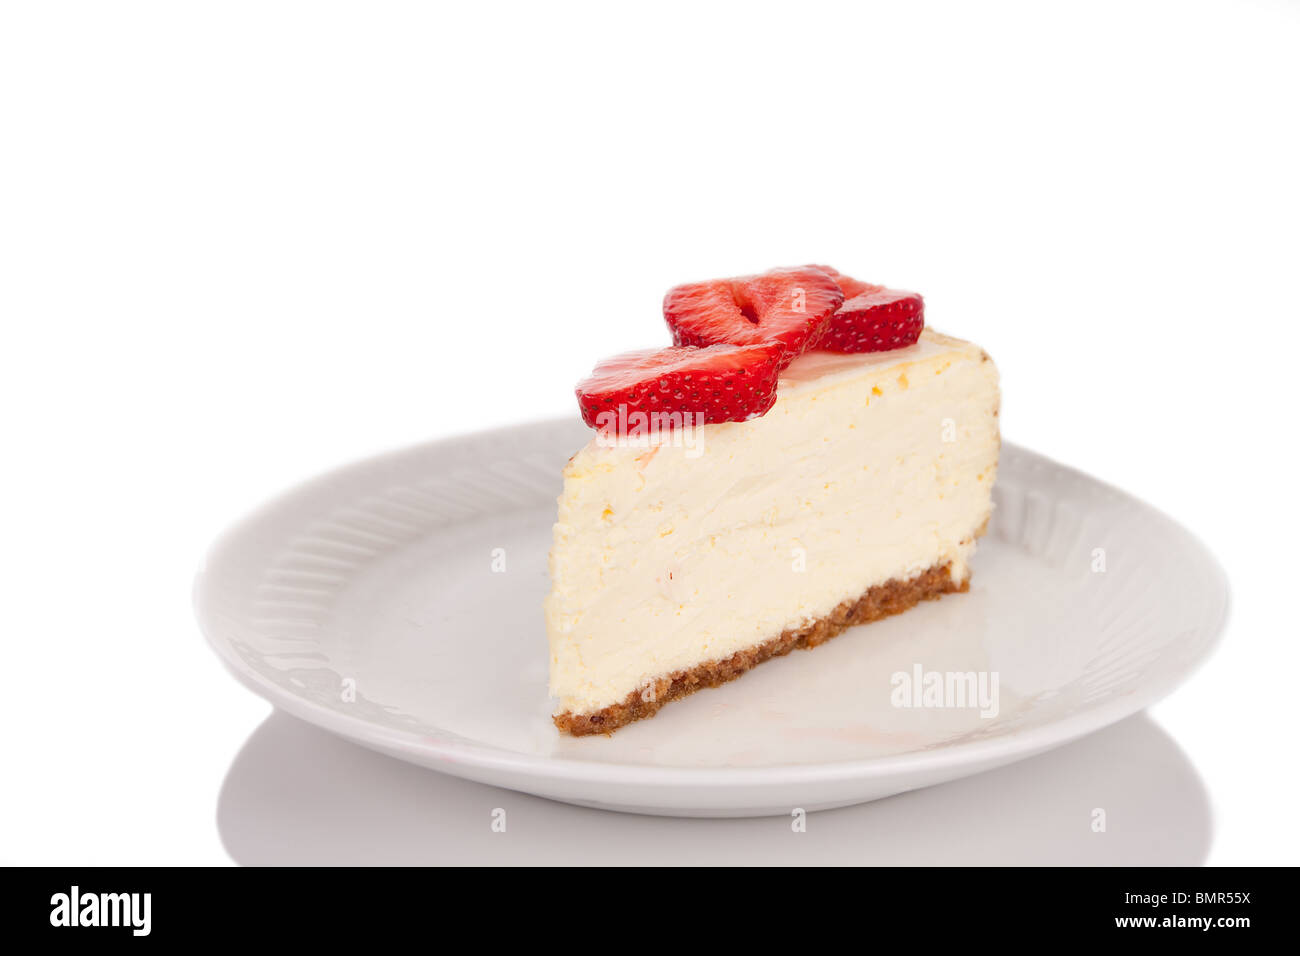 Una rebanada de Strawberry Cheesecake sobre una placa blanca. Foto de stock